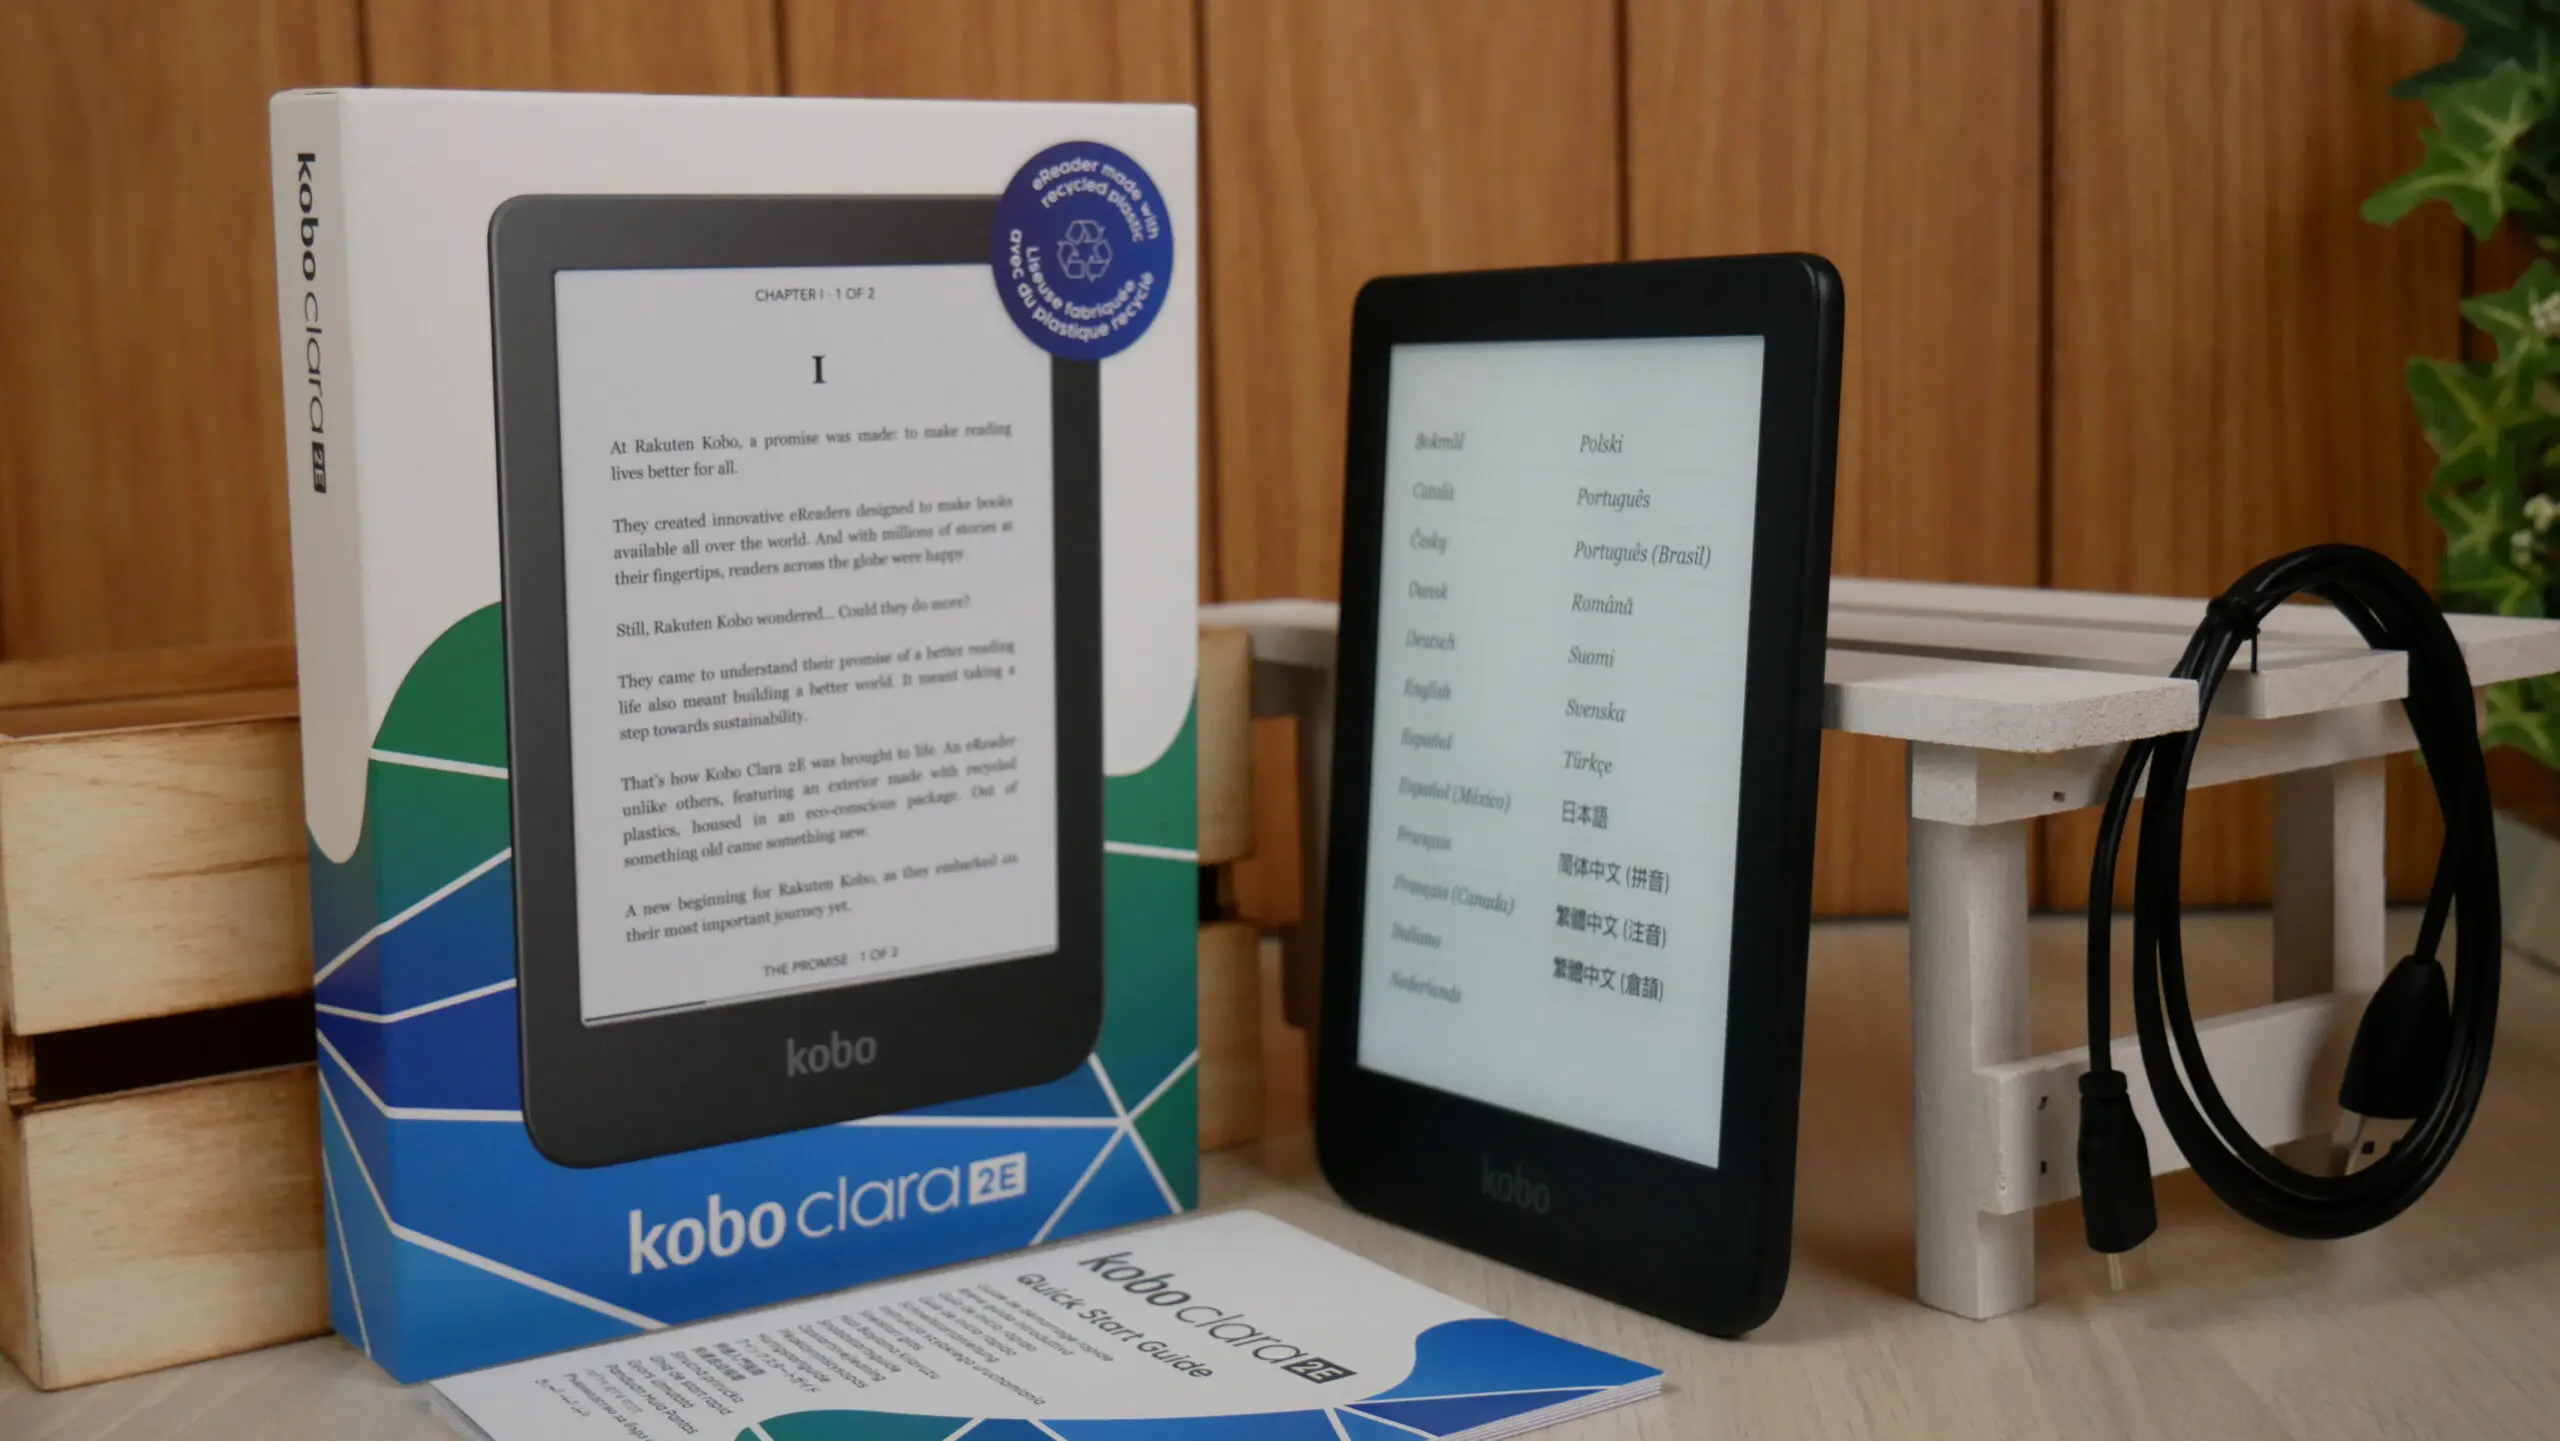 First Look at the Kobo Clara 2e e-reader